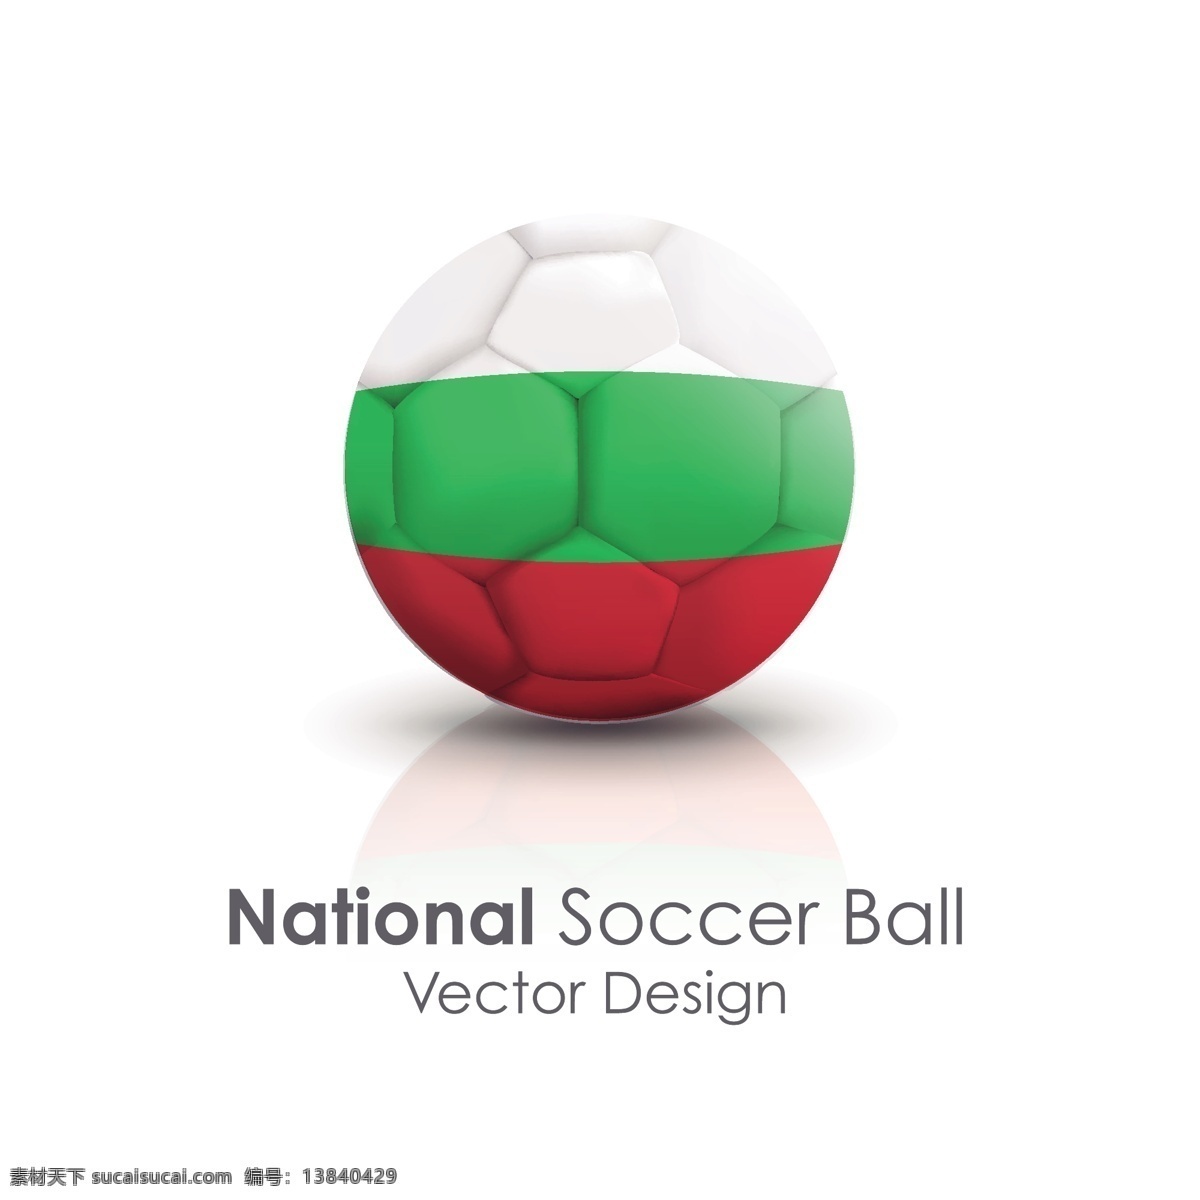 保加利亚 国旗 足球 贴图 矢量 保加利亚国旗 足球贴图 矢量素材 足球海报 校园足球 足球小报素材 足球运动员 足球海报素材 足球比赛海报 足球宣传海报 足球创意海报